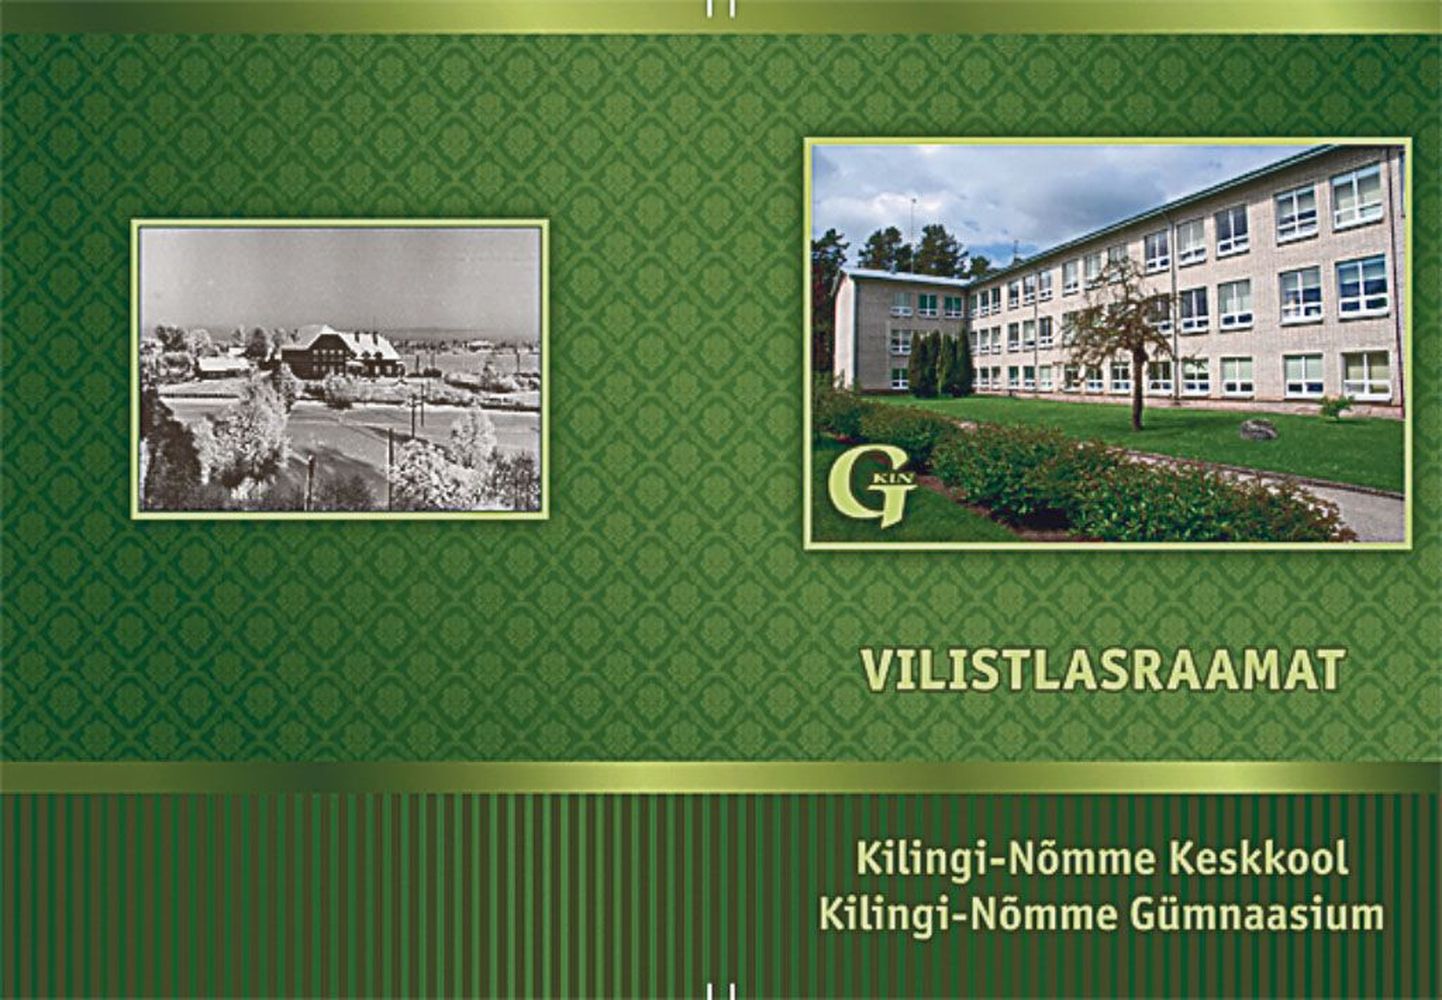 Kilingi-Nõmme gümnaasiumi “Vilistlasraamatusse” on talletatud koolilugu.